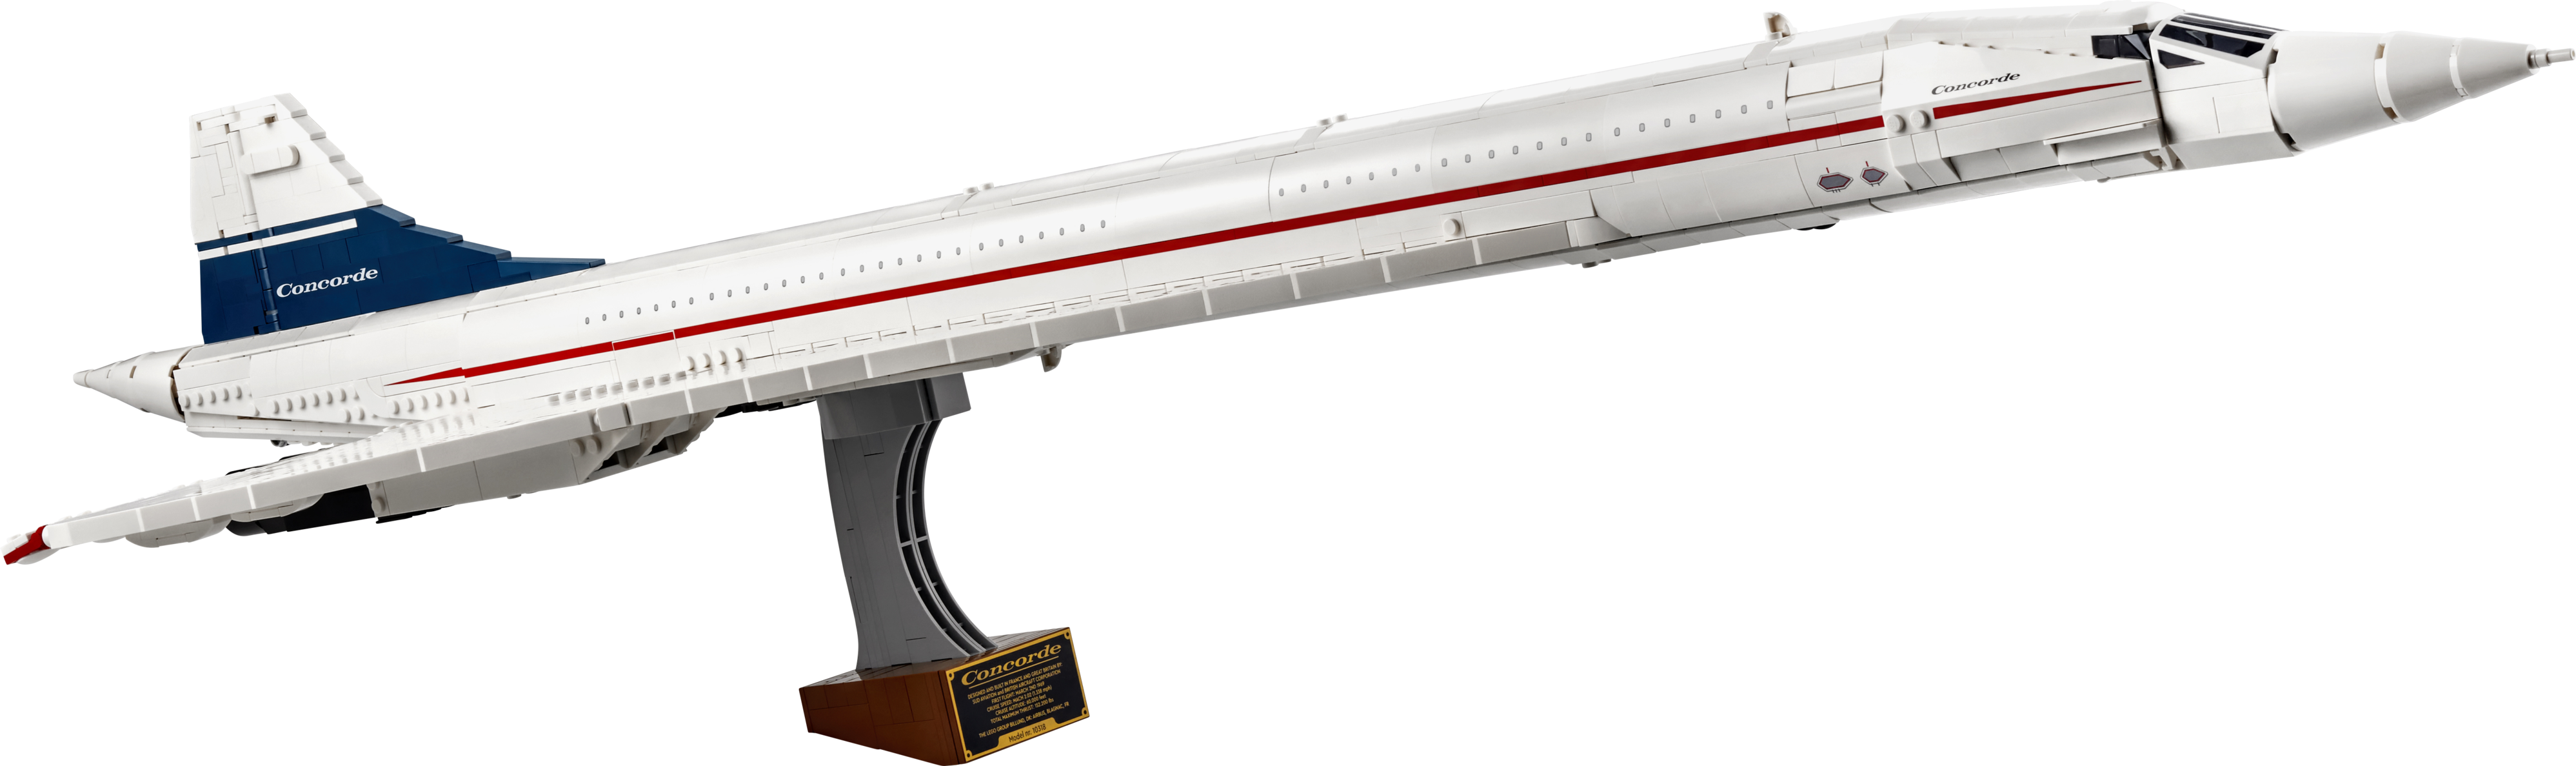 Concorde för 2449,9 kr på LEGO